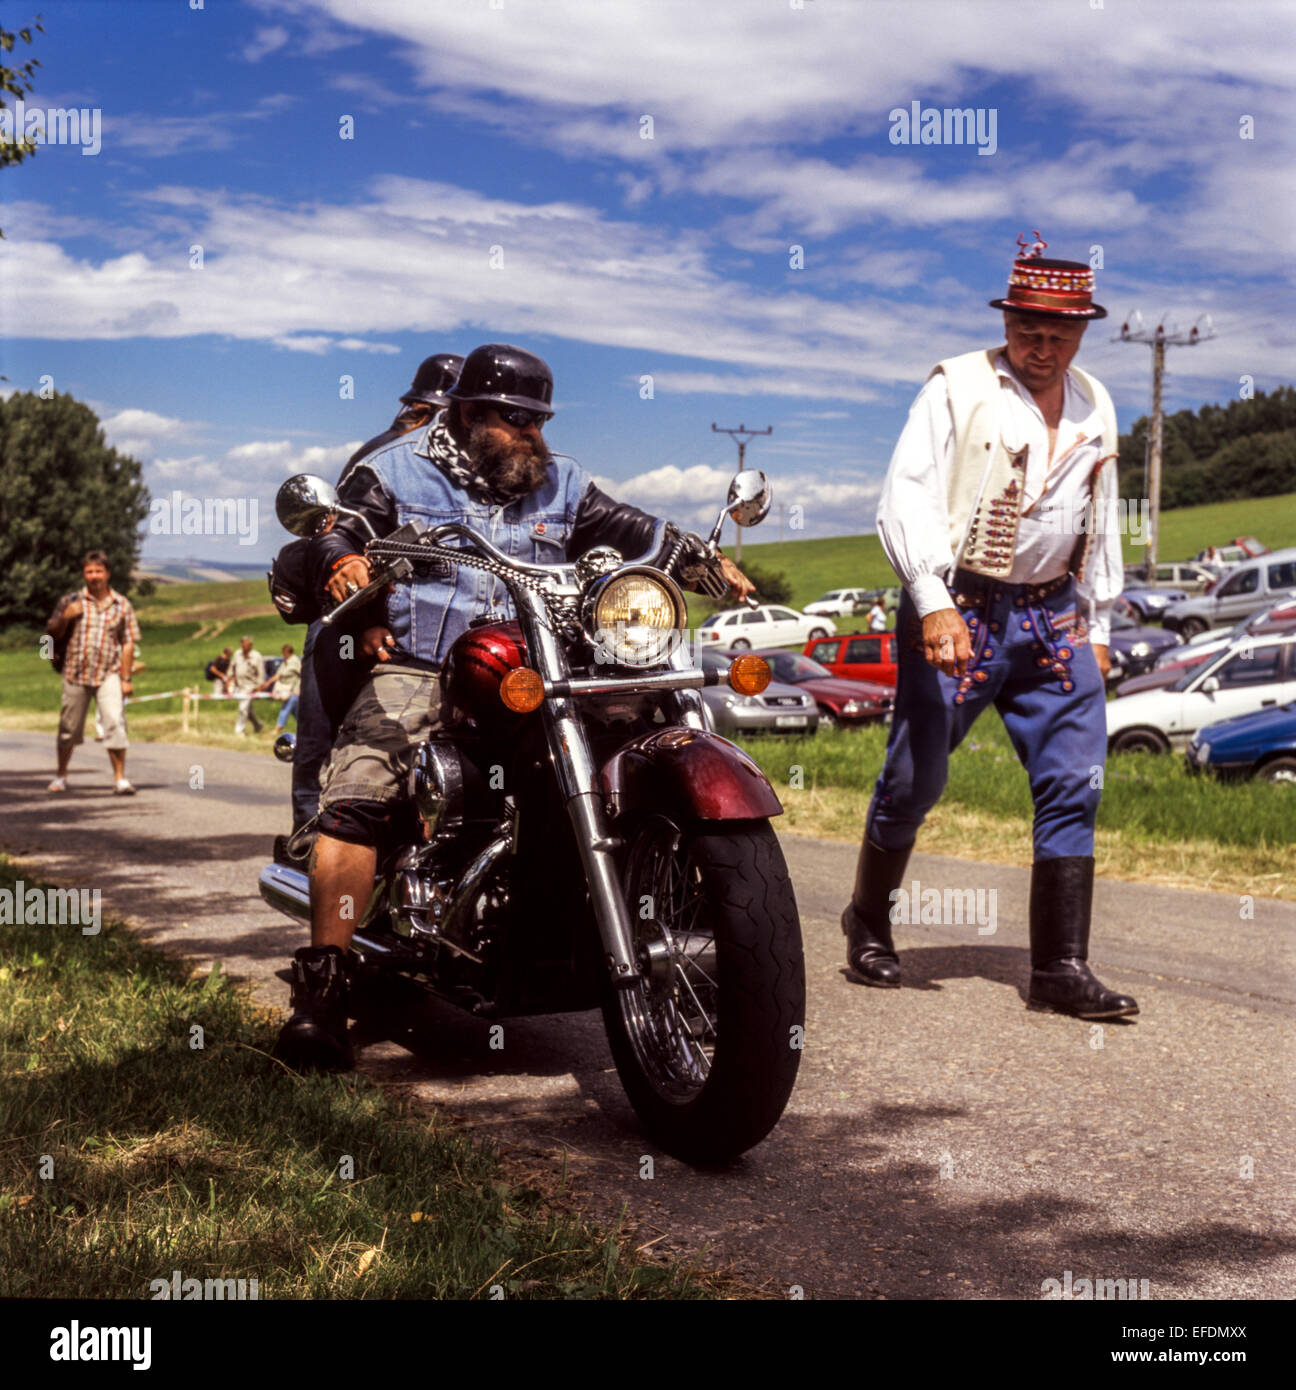 Elderly man in folk costume passing motorbike fans, Moravia, Czech Republic Stock Photo